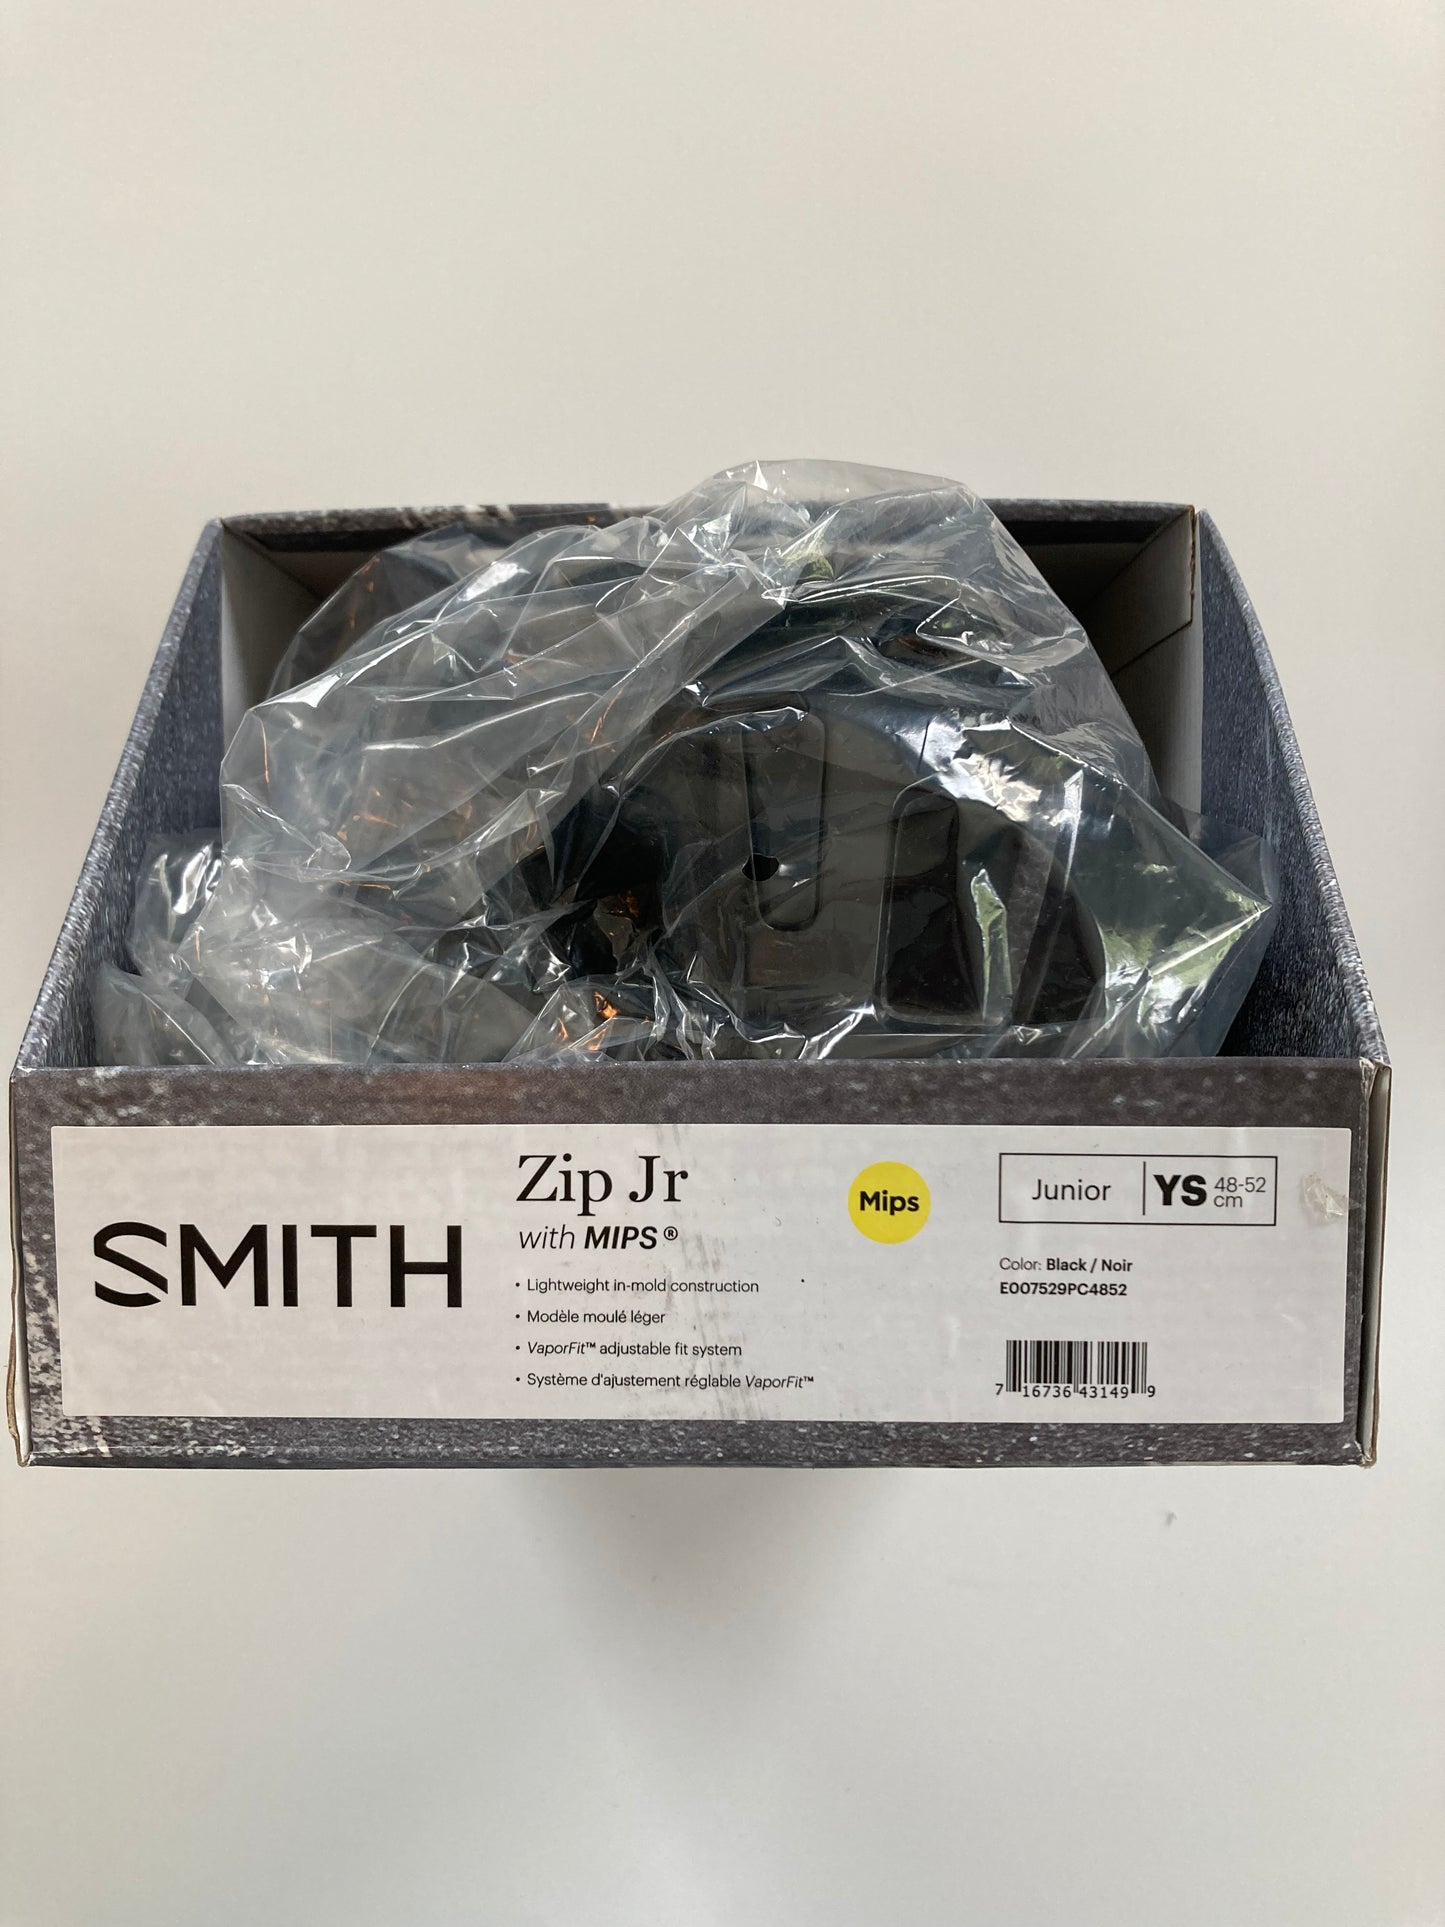 Smith Zip Jr. size YS (48-52cm) bike helmet with MIPS  NIB